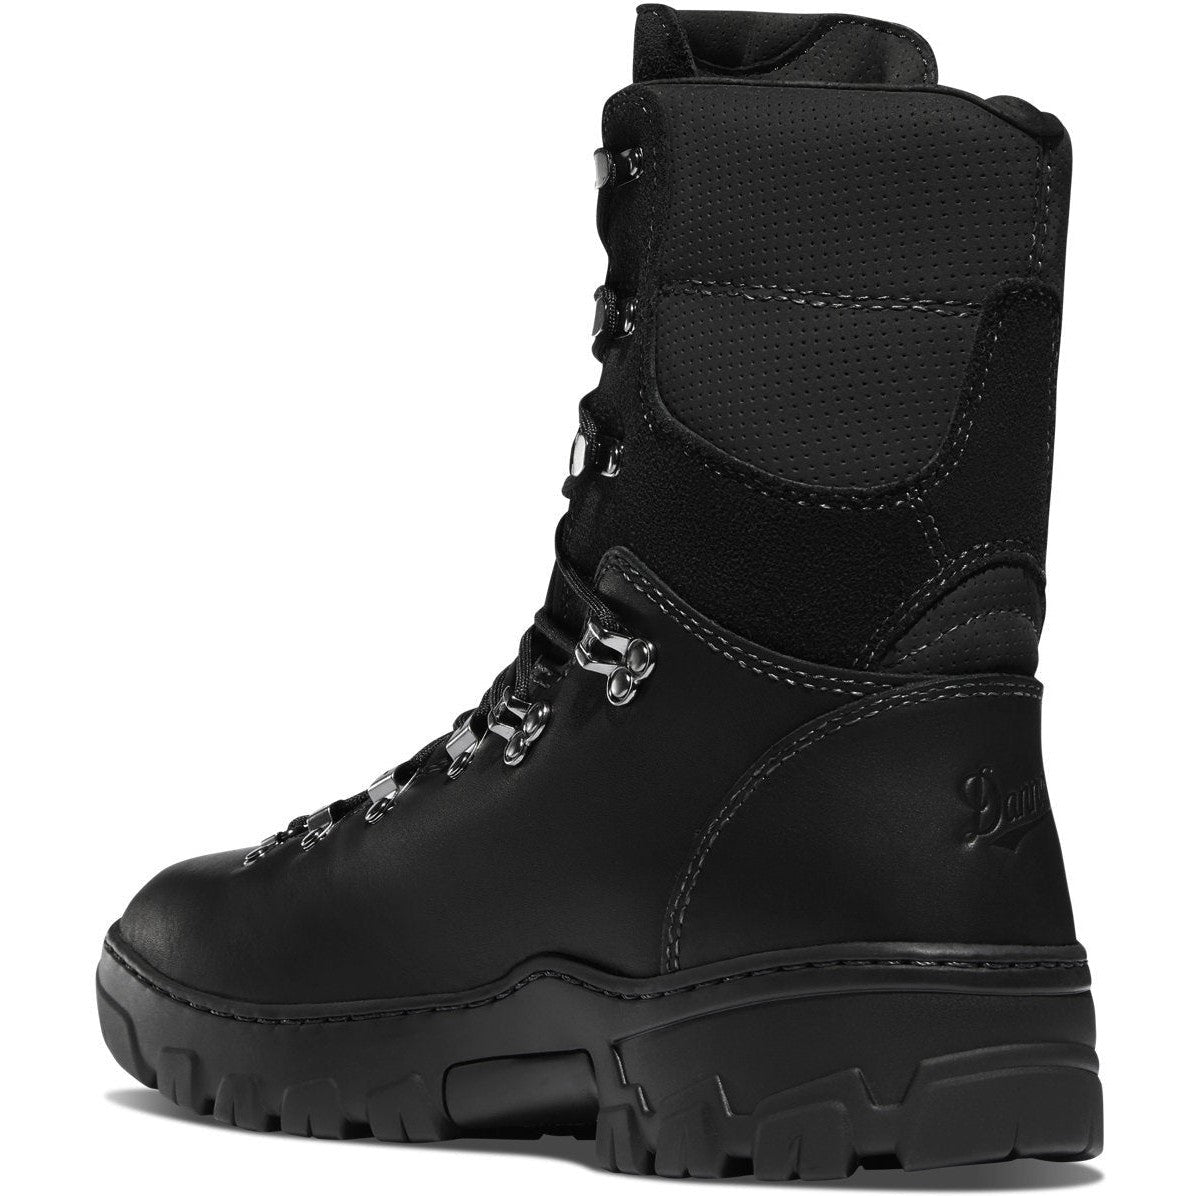 Danner Men's Wildland Tactical Firefighter 8"  Duty Boot -Black- 18054  - Overlook Boots